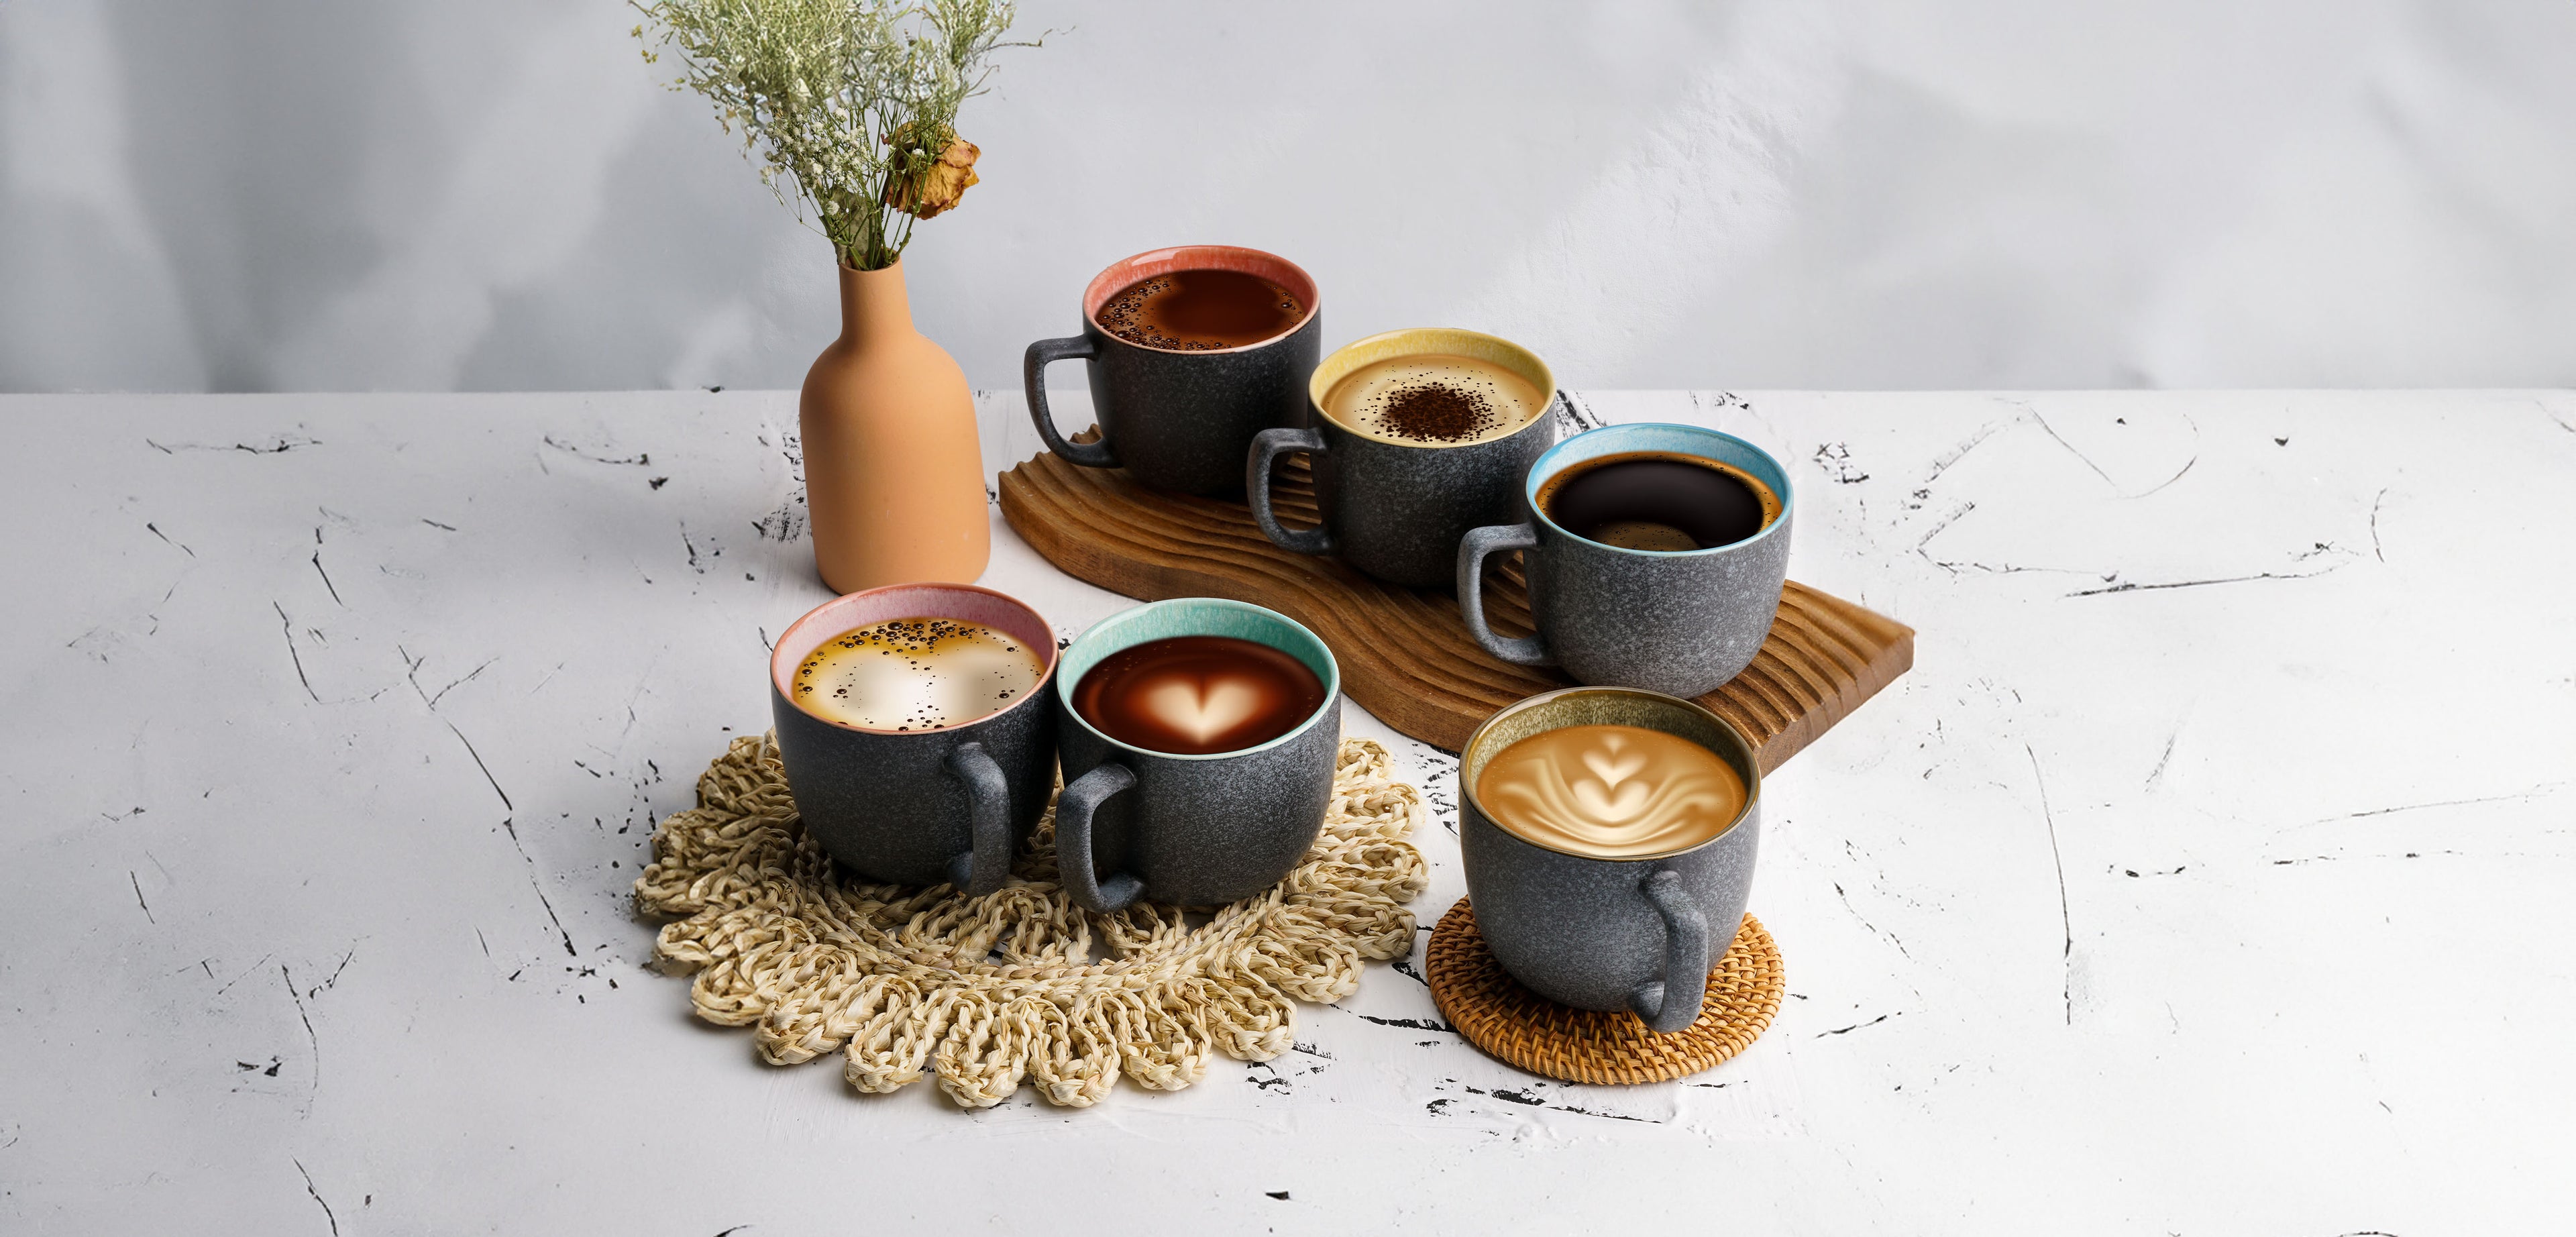 MIAMIO Kaffeetassen Set aus Steingut mit Kaffee befüllt in schöner Szenerie